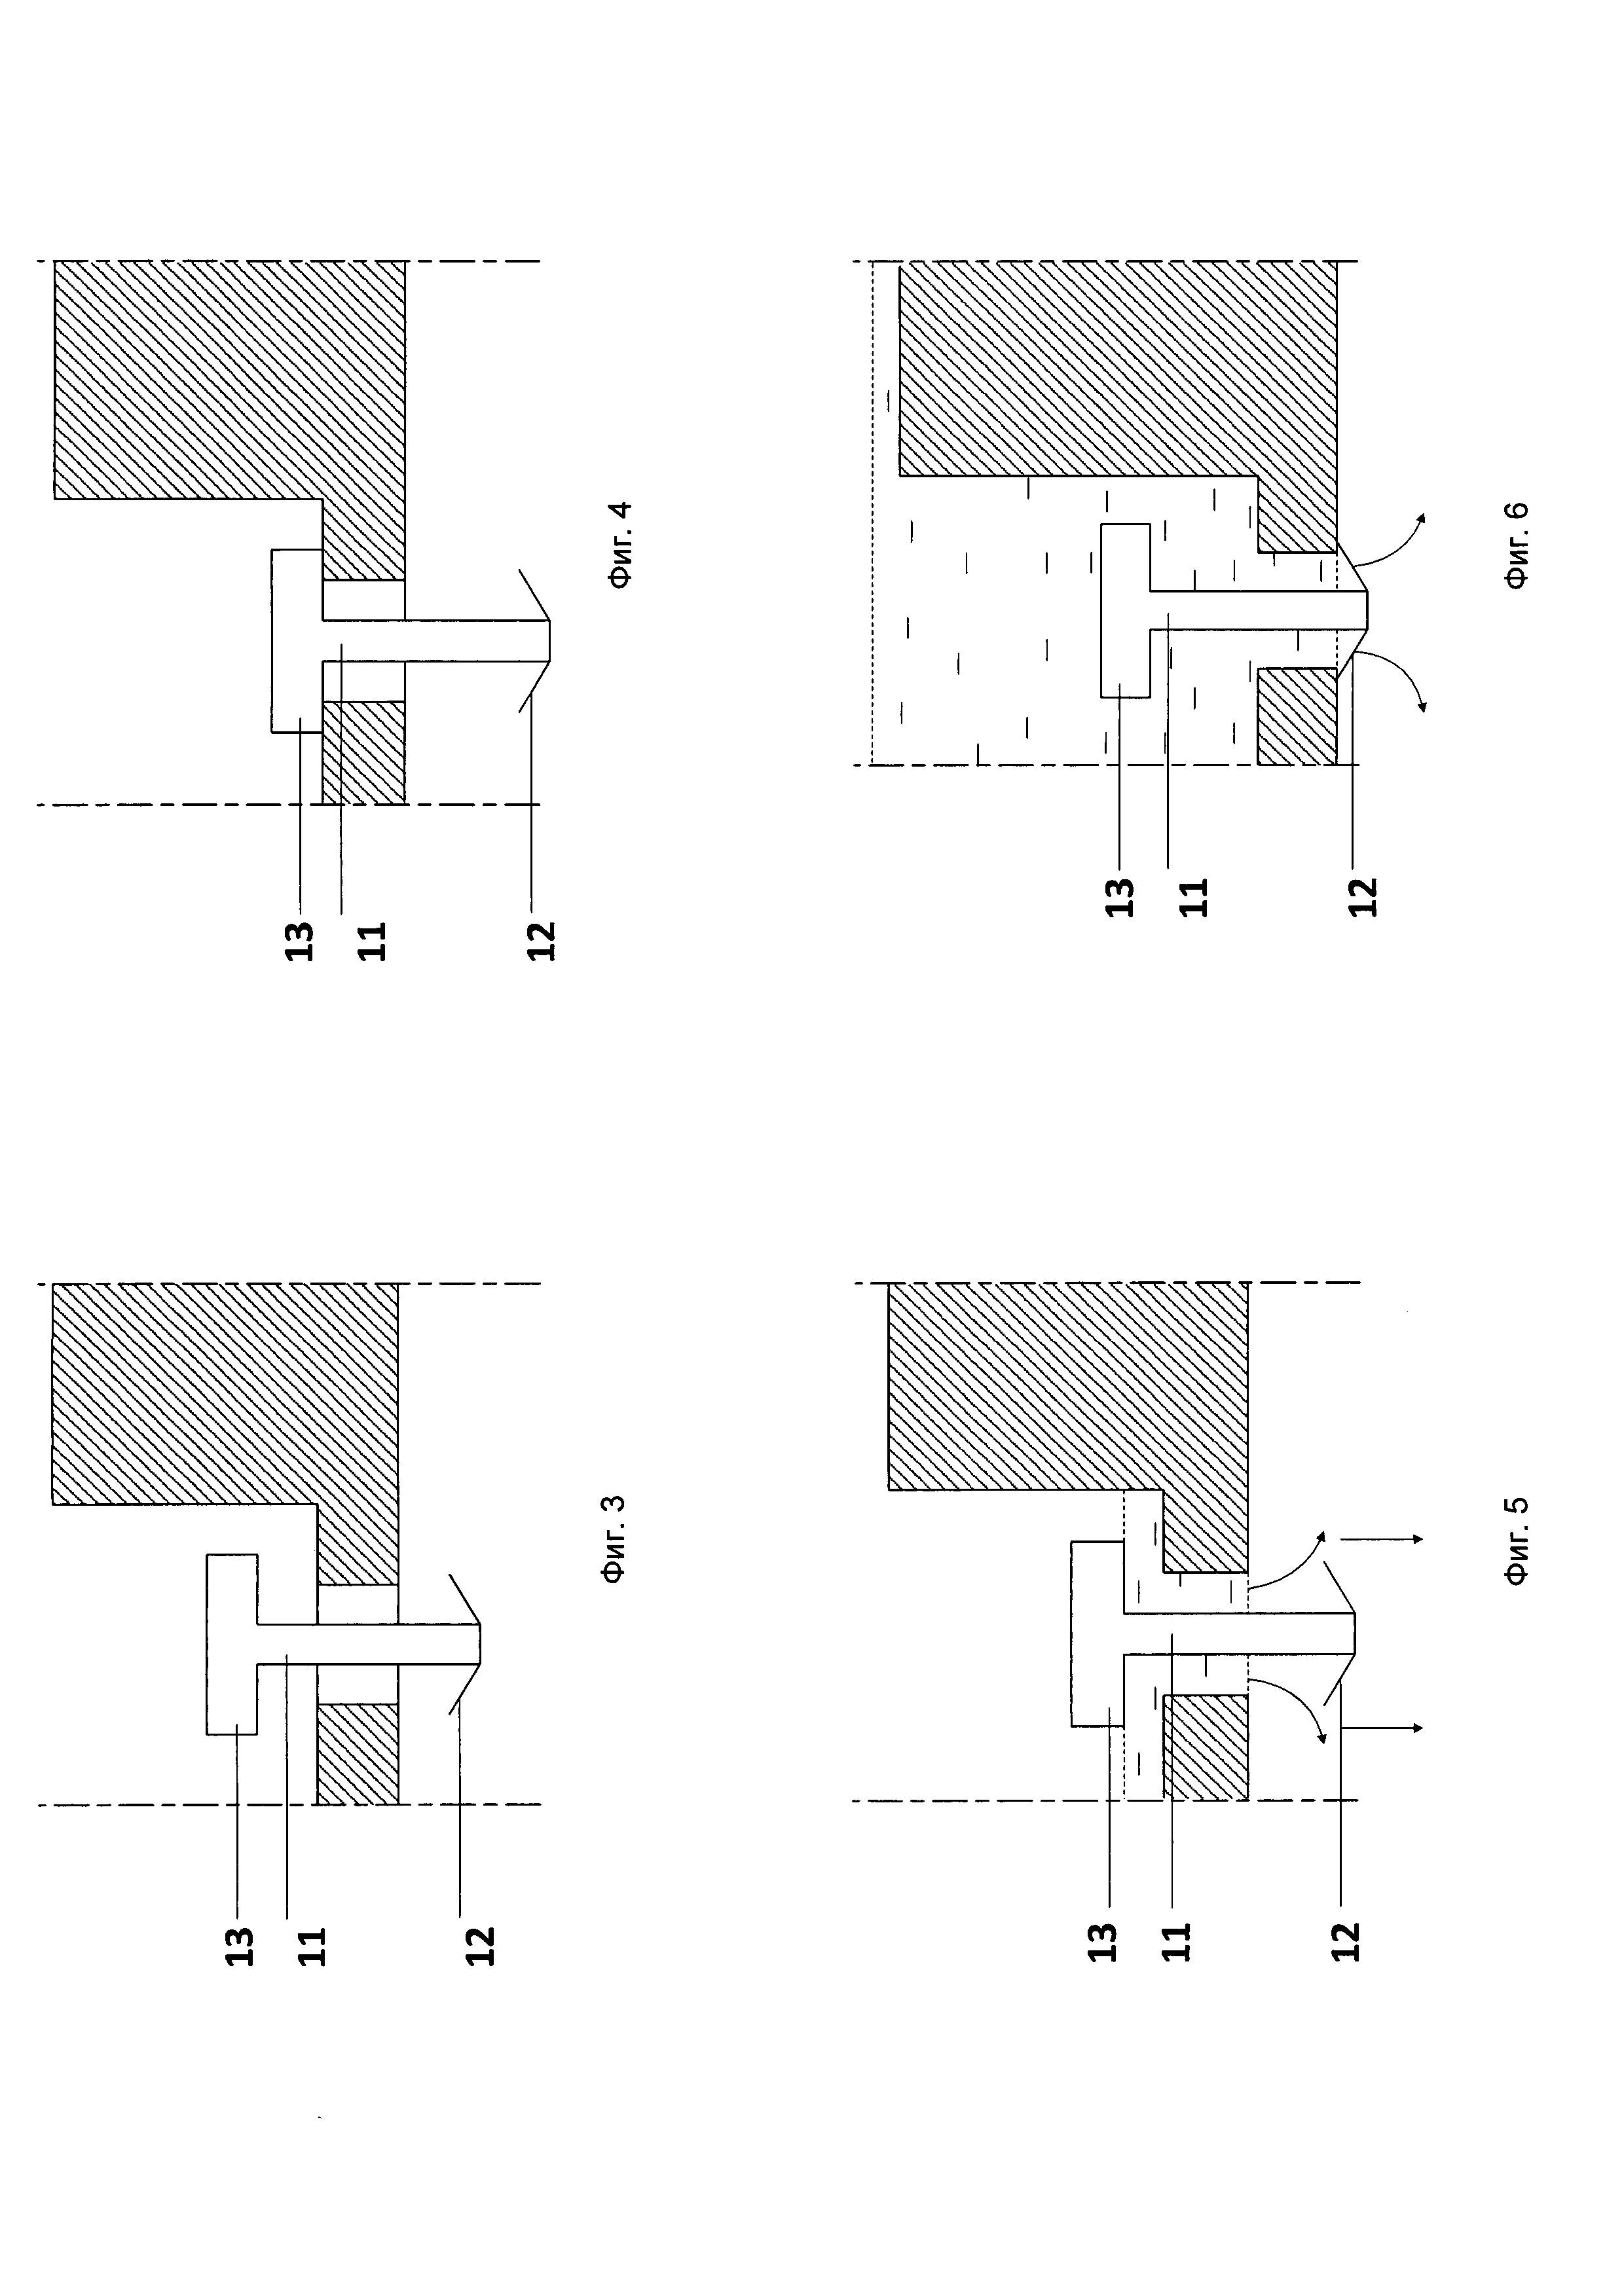 Массообменная колонна с перекрестным током жидкой и газовой (паровой) фаз системы 